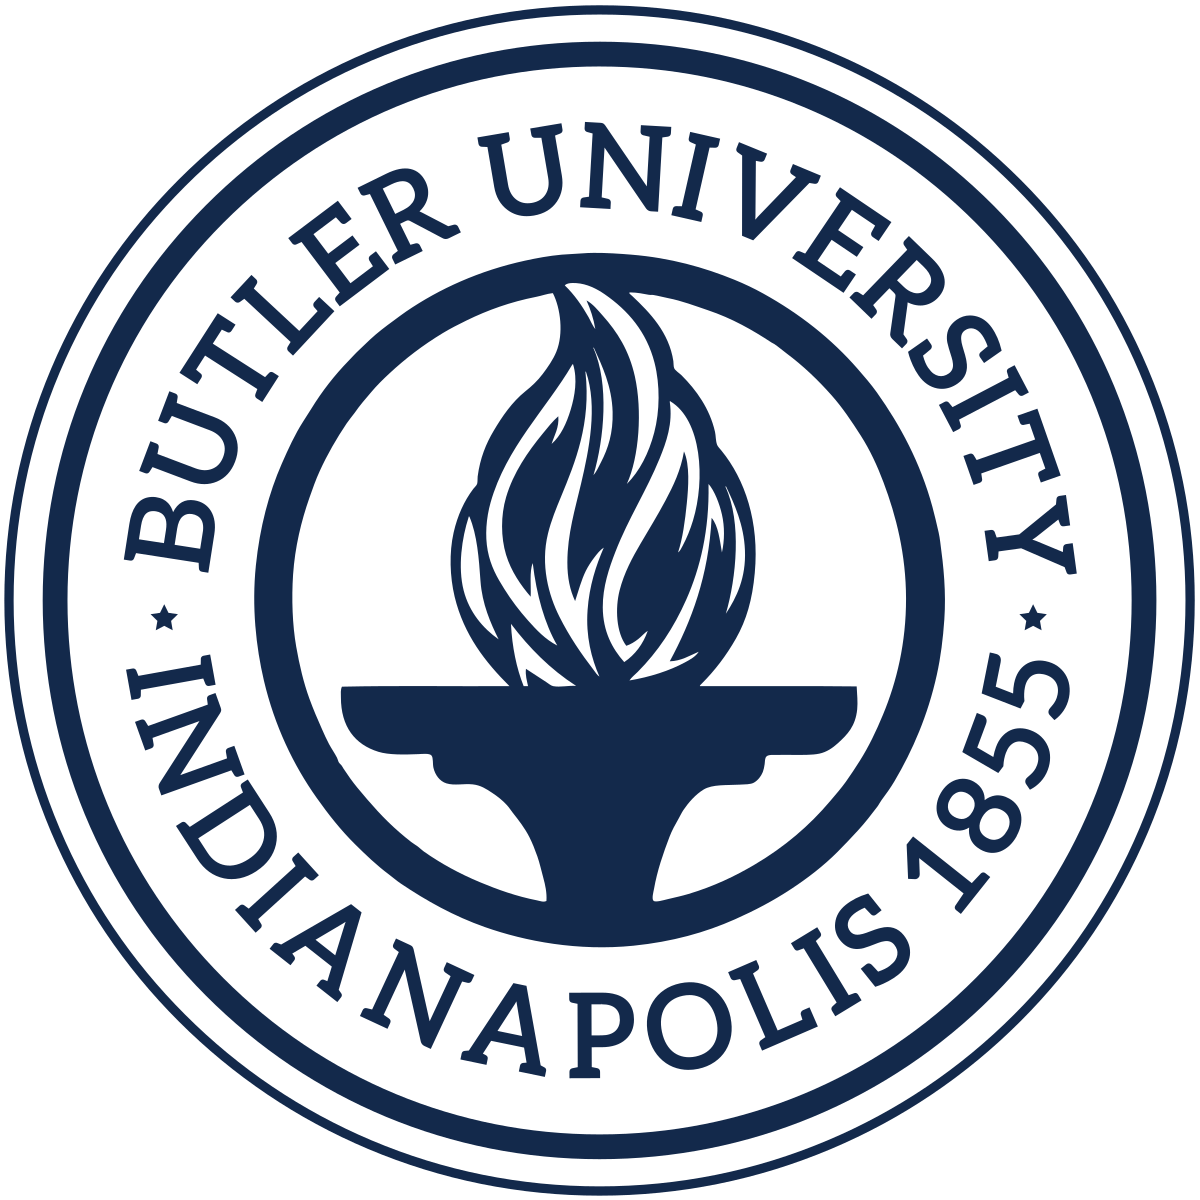 Butler University Logo - Butler University